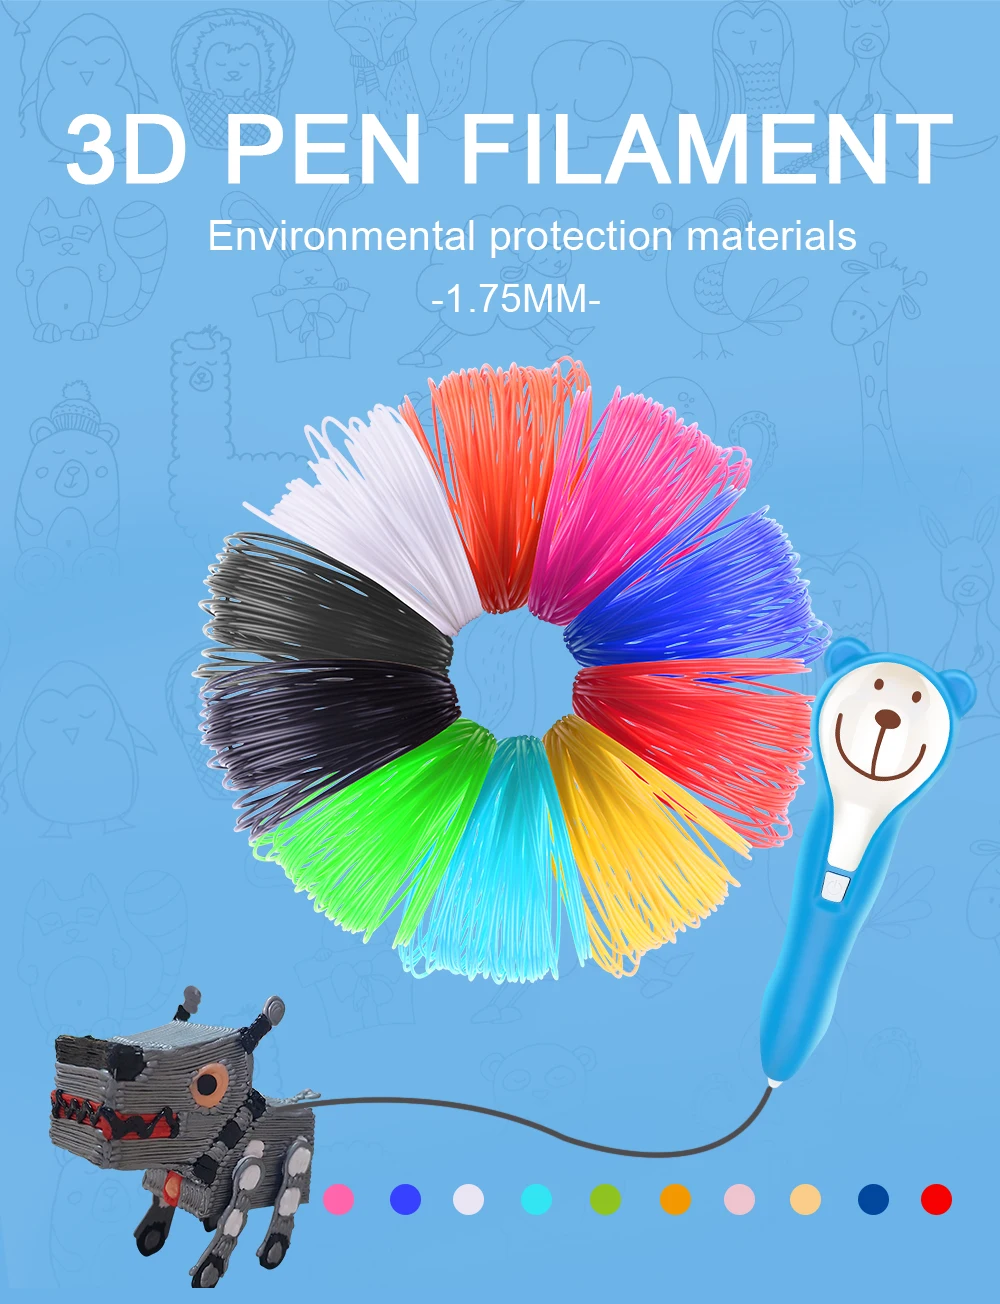 PLA 3D ручка/нить для 3d принтера 1,75 мм(24 цвета, 32 фута) нить для 3D Ручки 1,75 мм PLA 3D ручка Pla пластик